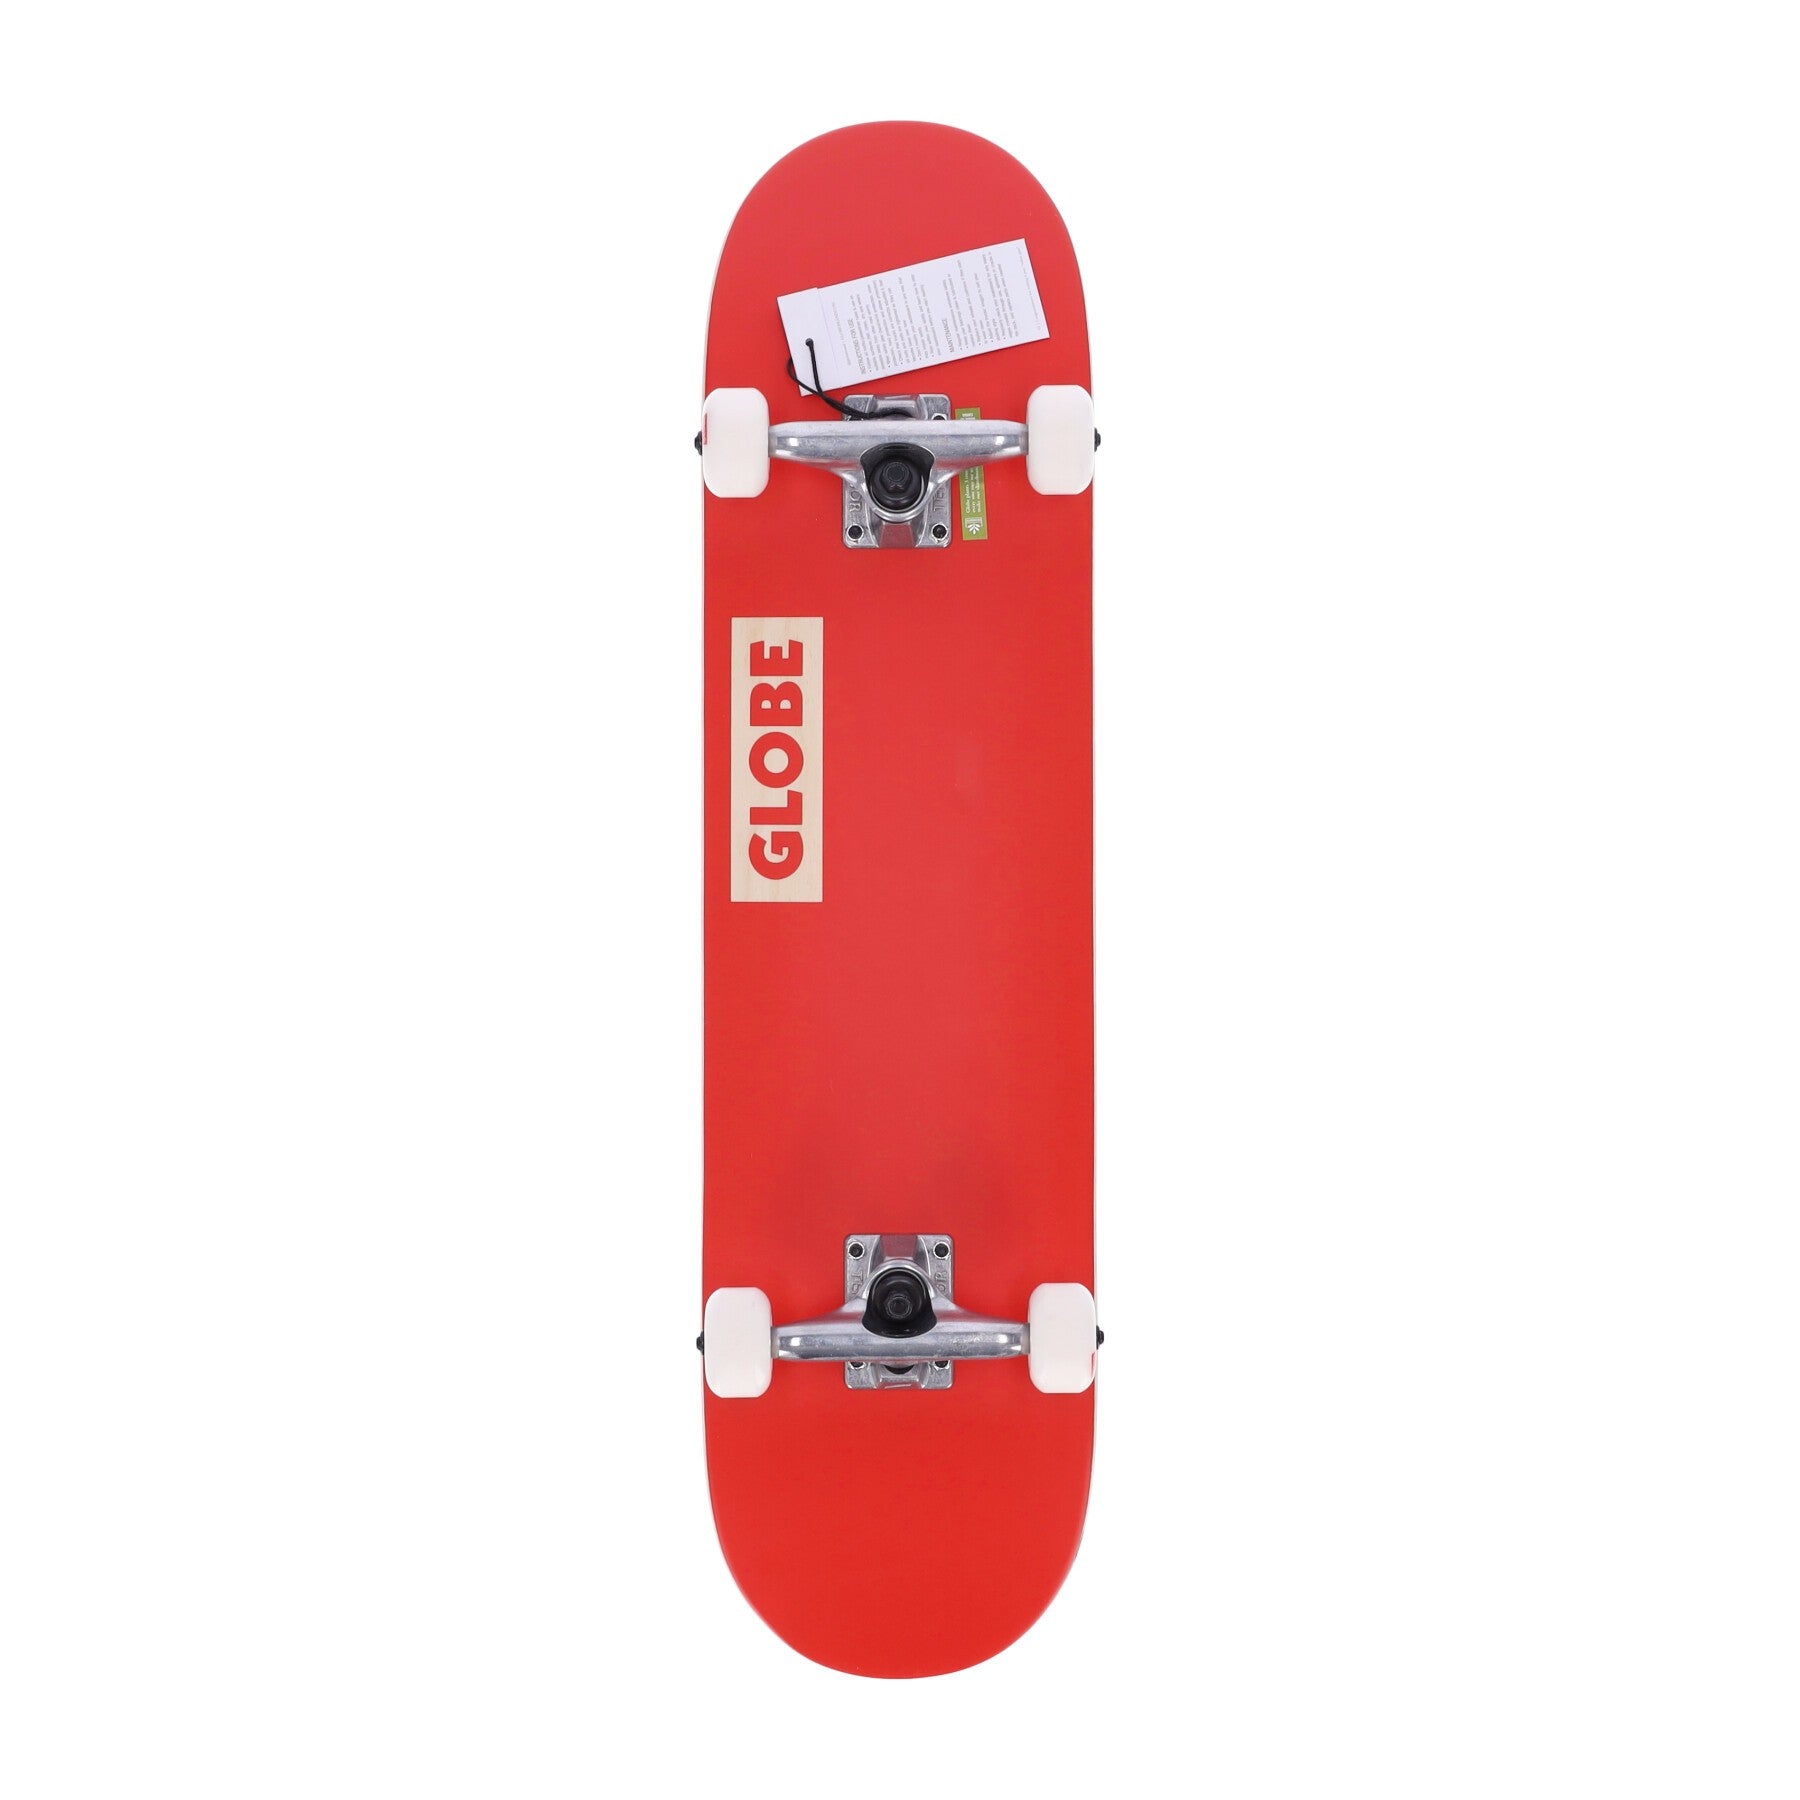 Zusammengebautes Goodstock-Skateboard für Herren in Rot